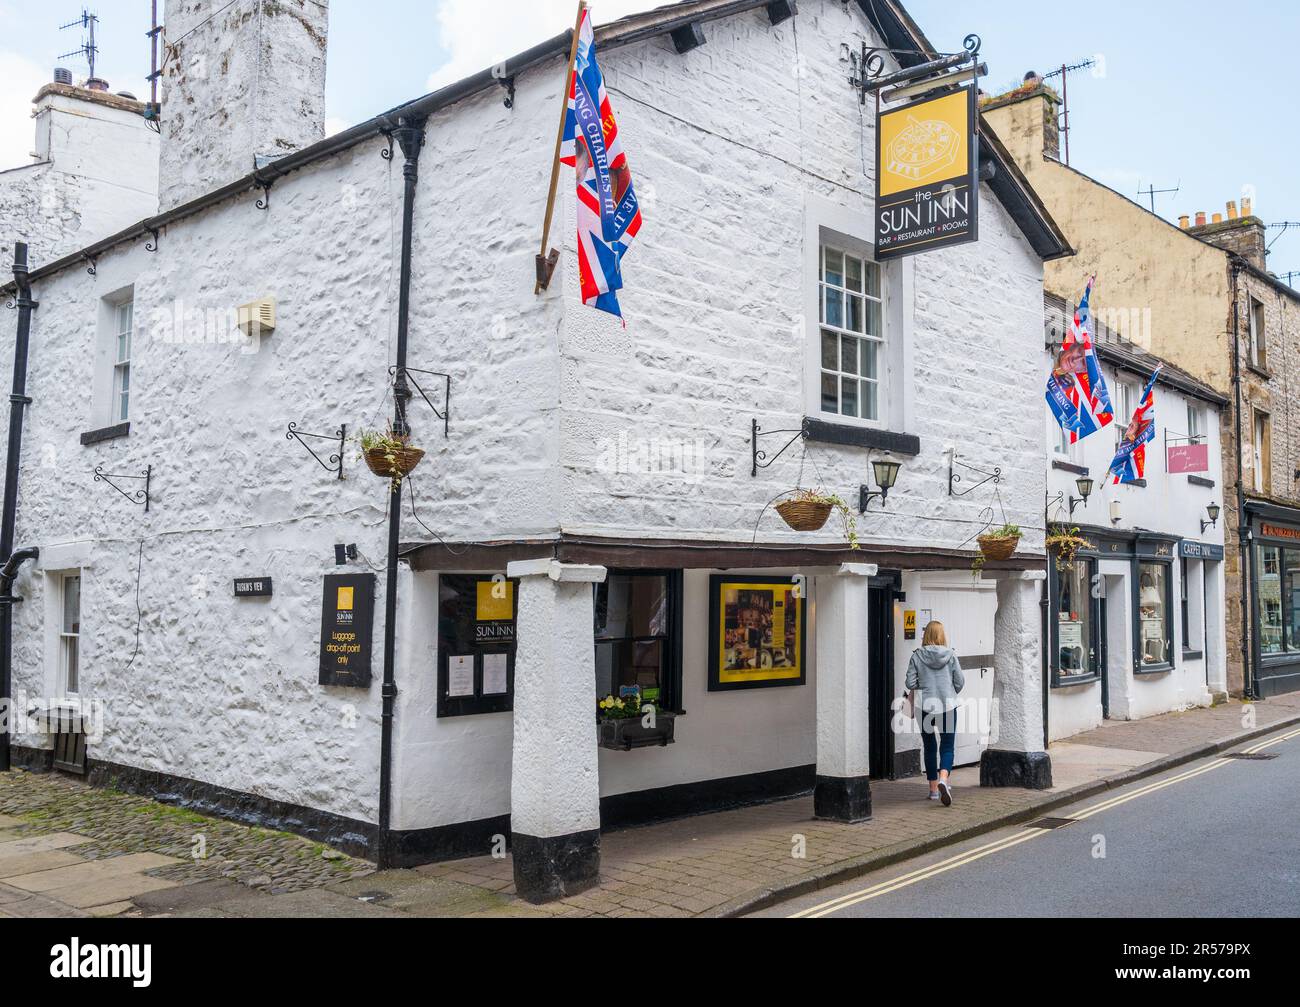 L'hotel 5 stelle 17th Century Sun Inn, nella storica cittadina commerciale dello Yorkshire di Kirkby Lonsdale. Foto Stock